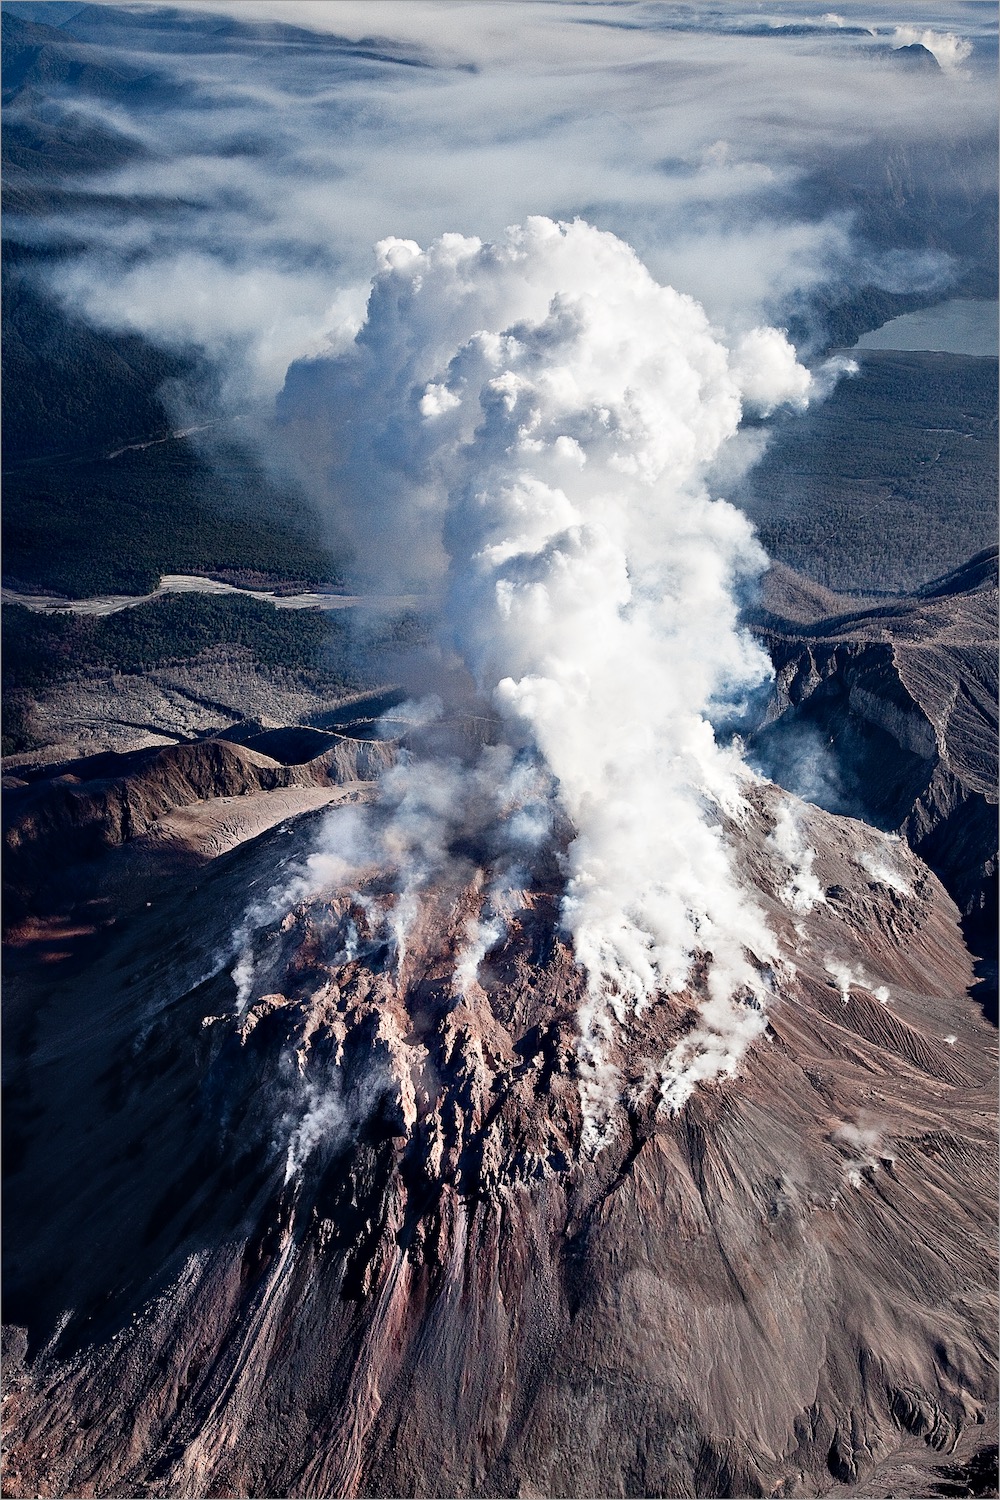 Chaiten volcano in eruption. Photo: Linde Waidhofer